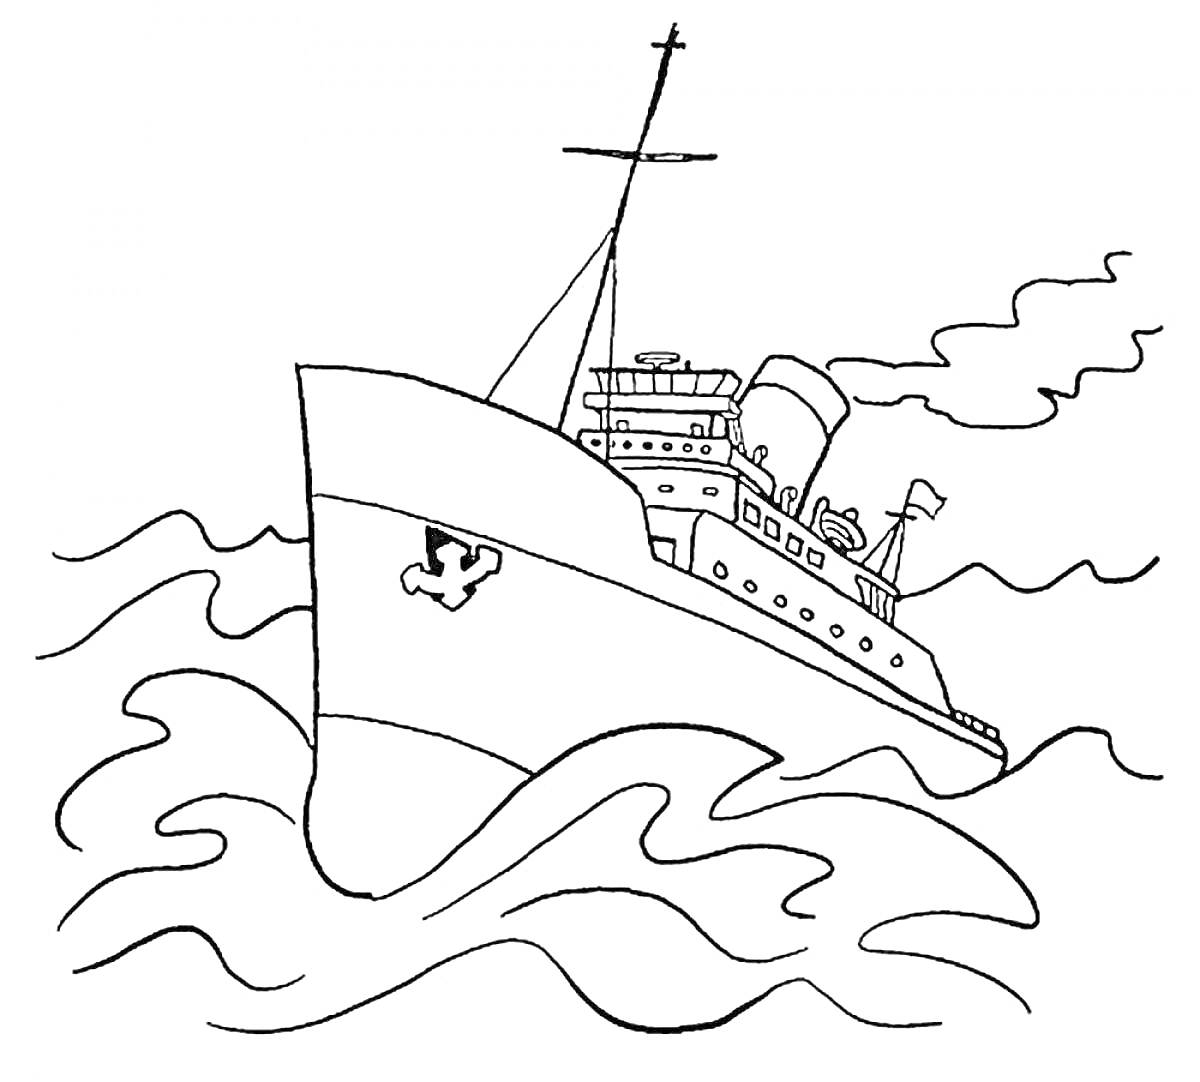 Раскраска Пароход на волнах с трубой, палубой, флагом и мачтой, выпускающий дым в небо